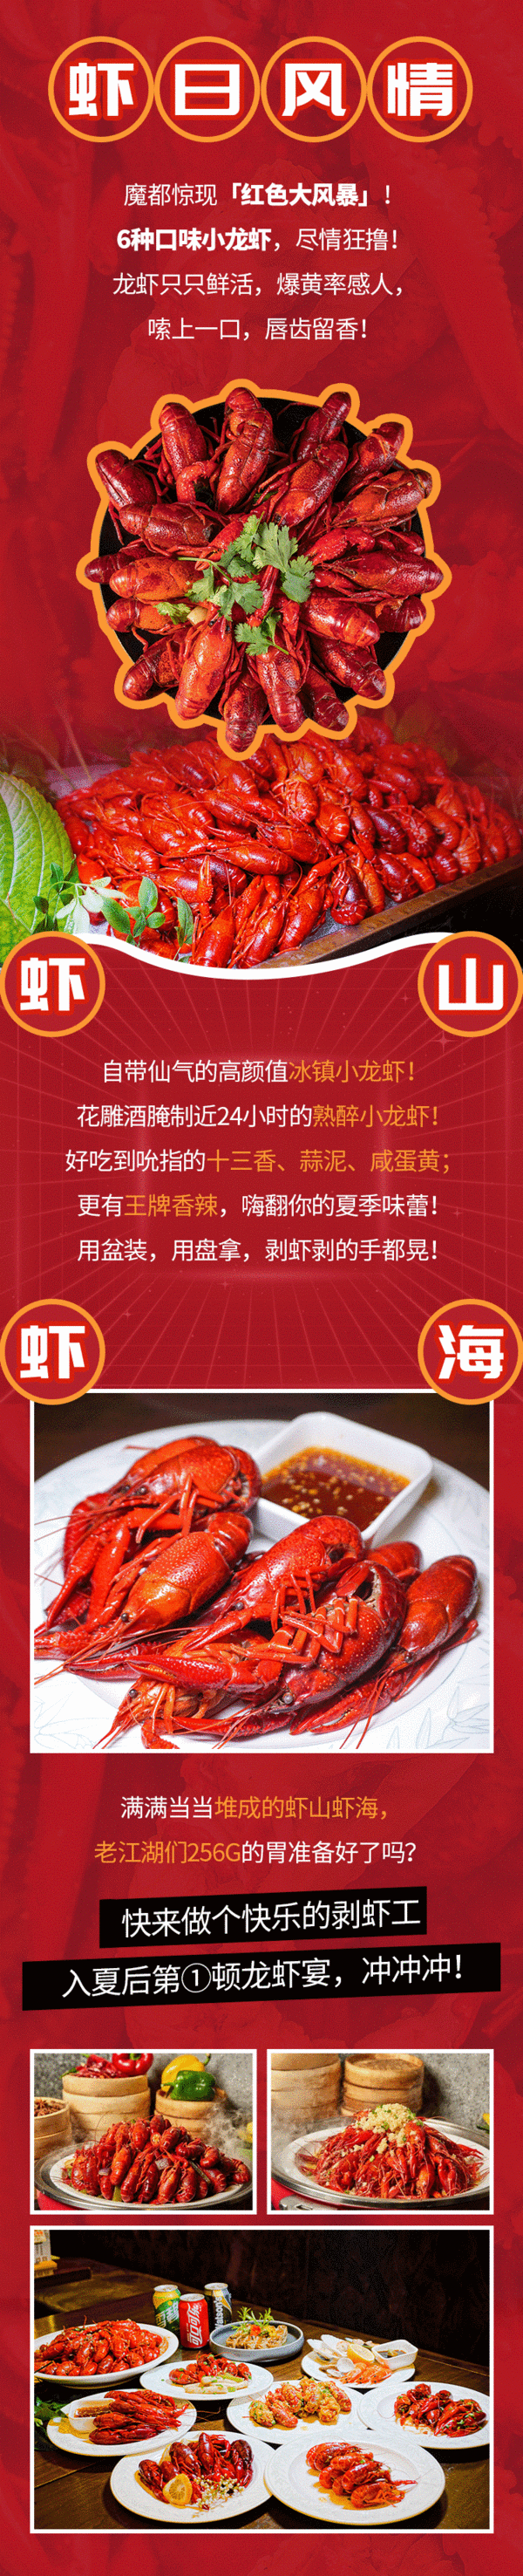 6种口味小龙虾畅吃！上海新锦江大酒店赛美蓉“虾”日风情自助晚餐